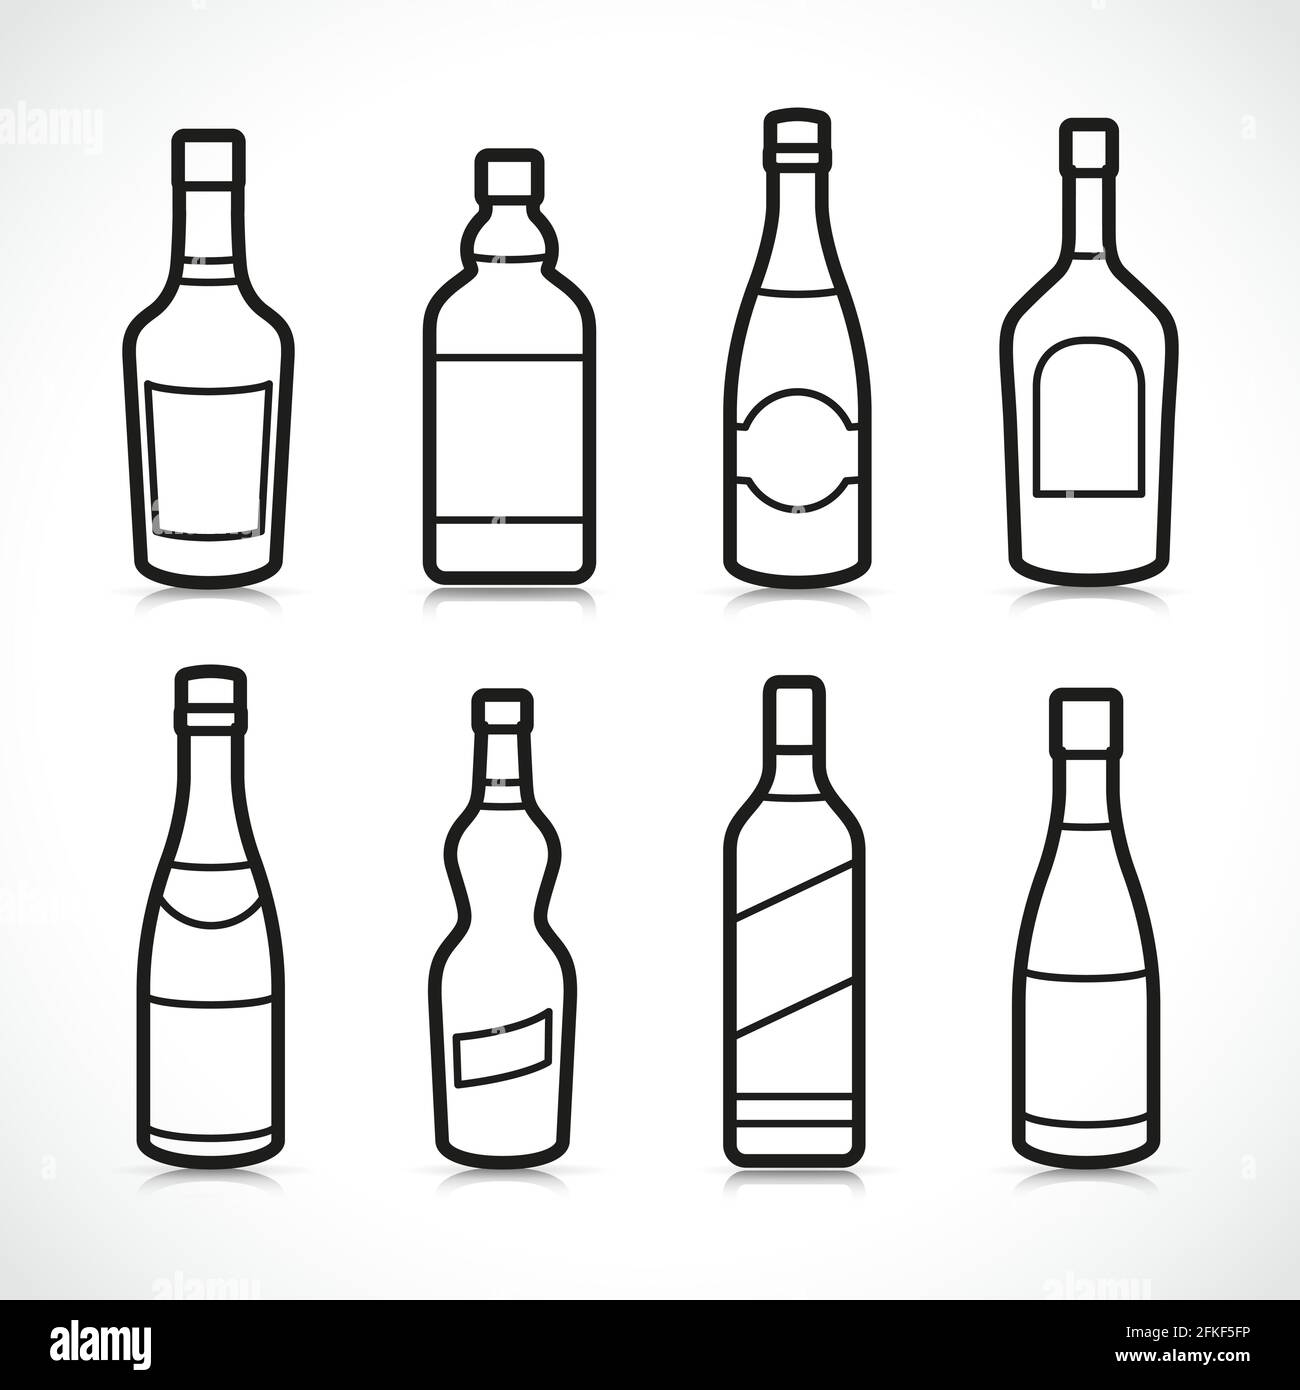 Illustrazione vettoriale delle icone dei flaconi di alcool Illustrazione Vettoriale